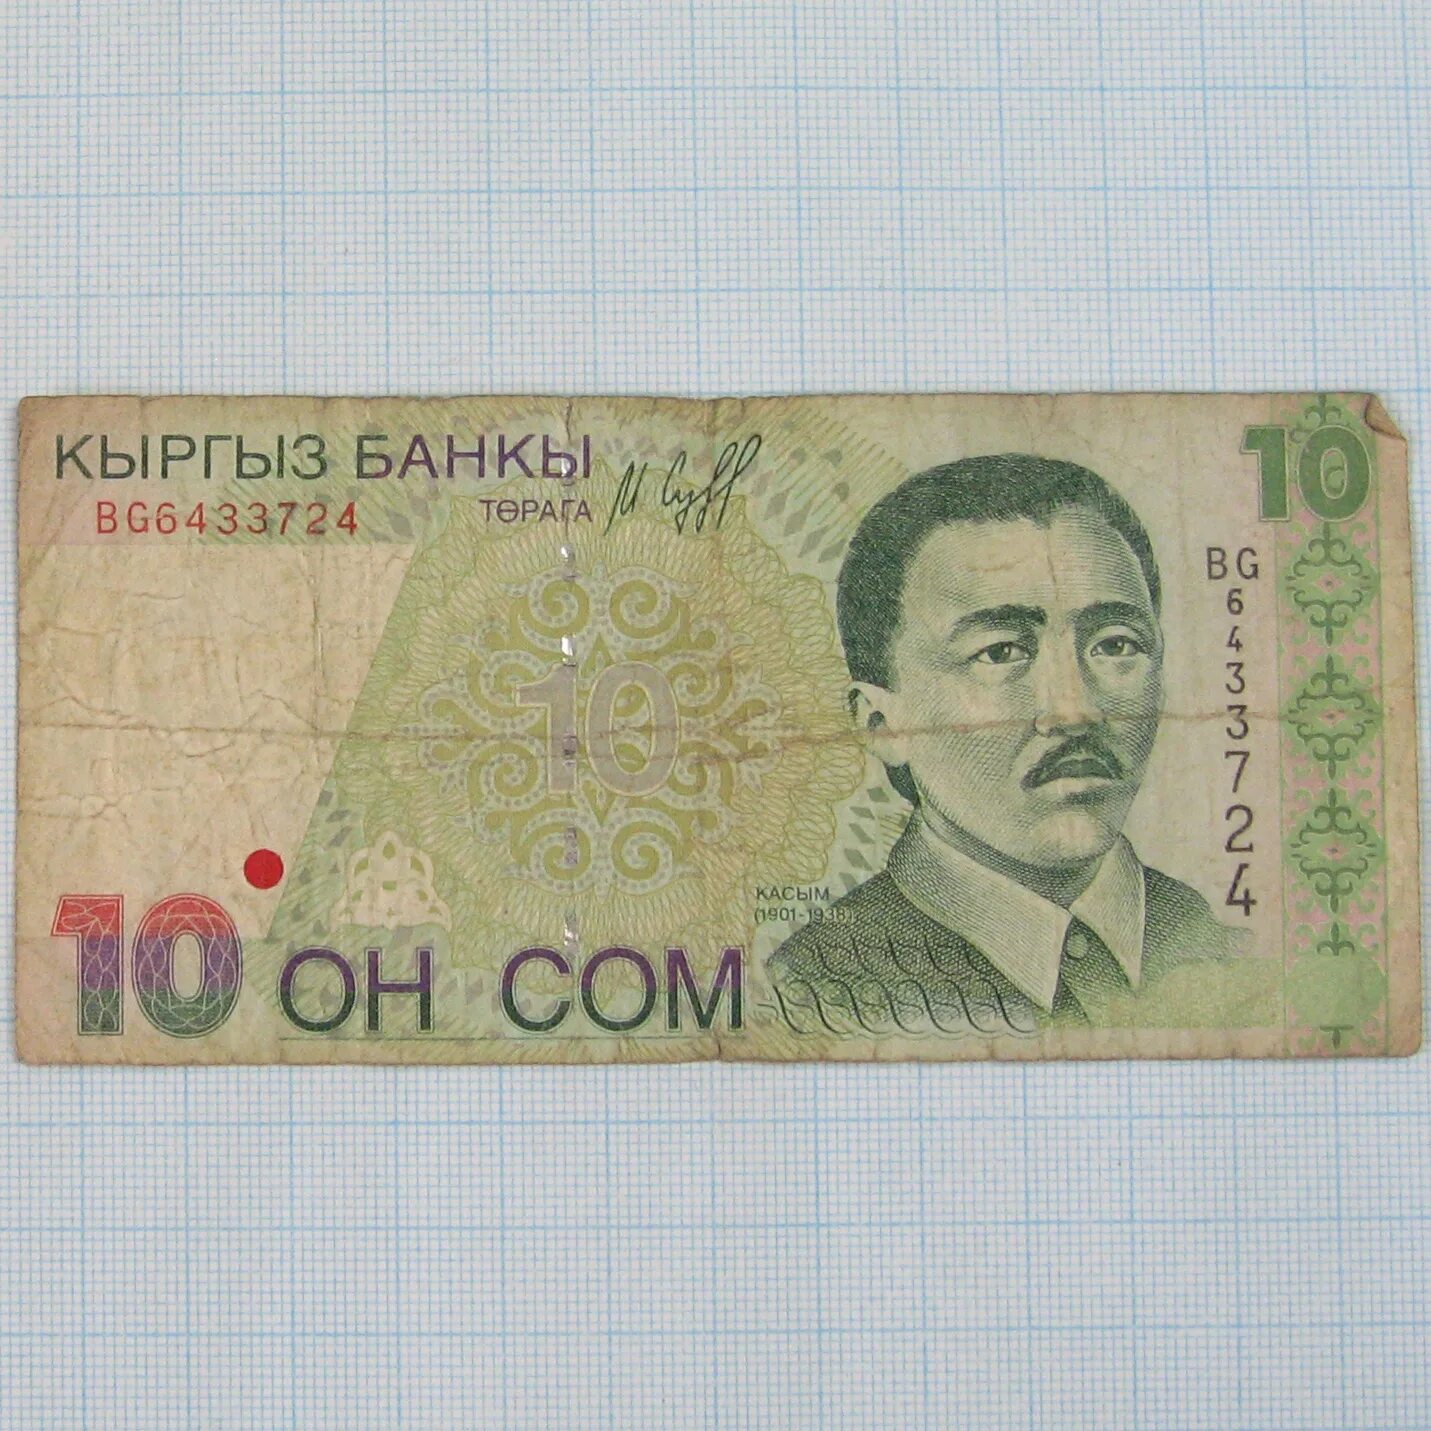 10 Сом. Киргизский сом. 10 Сом Кыргызстан. 5000 Сом Киргизия.